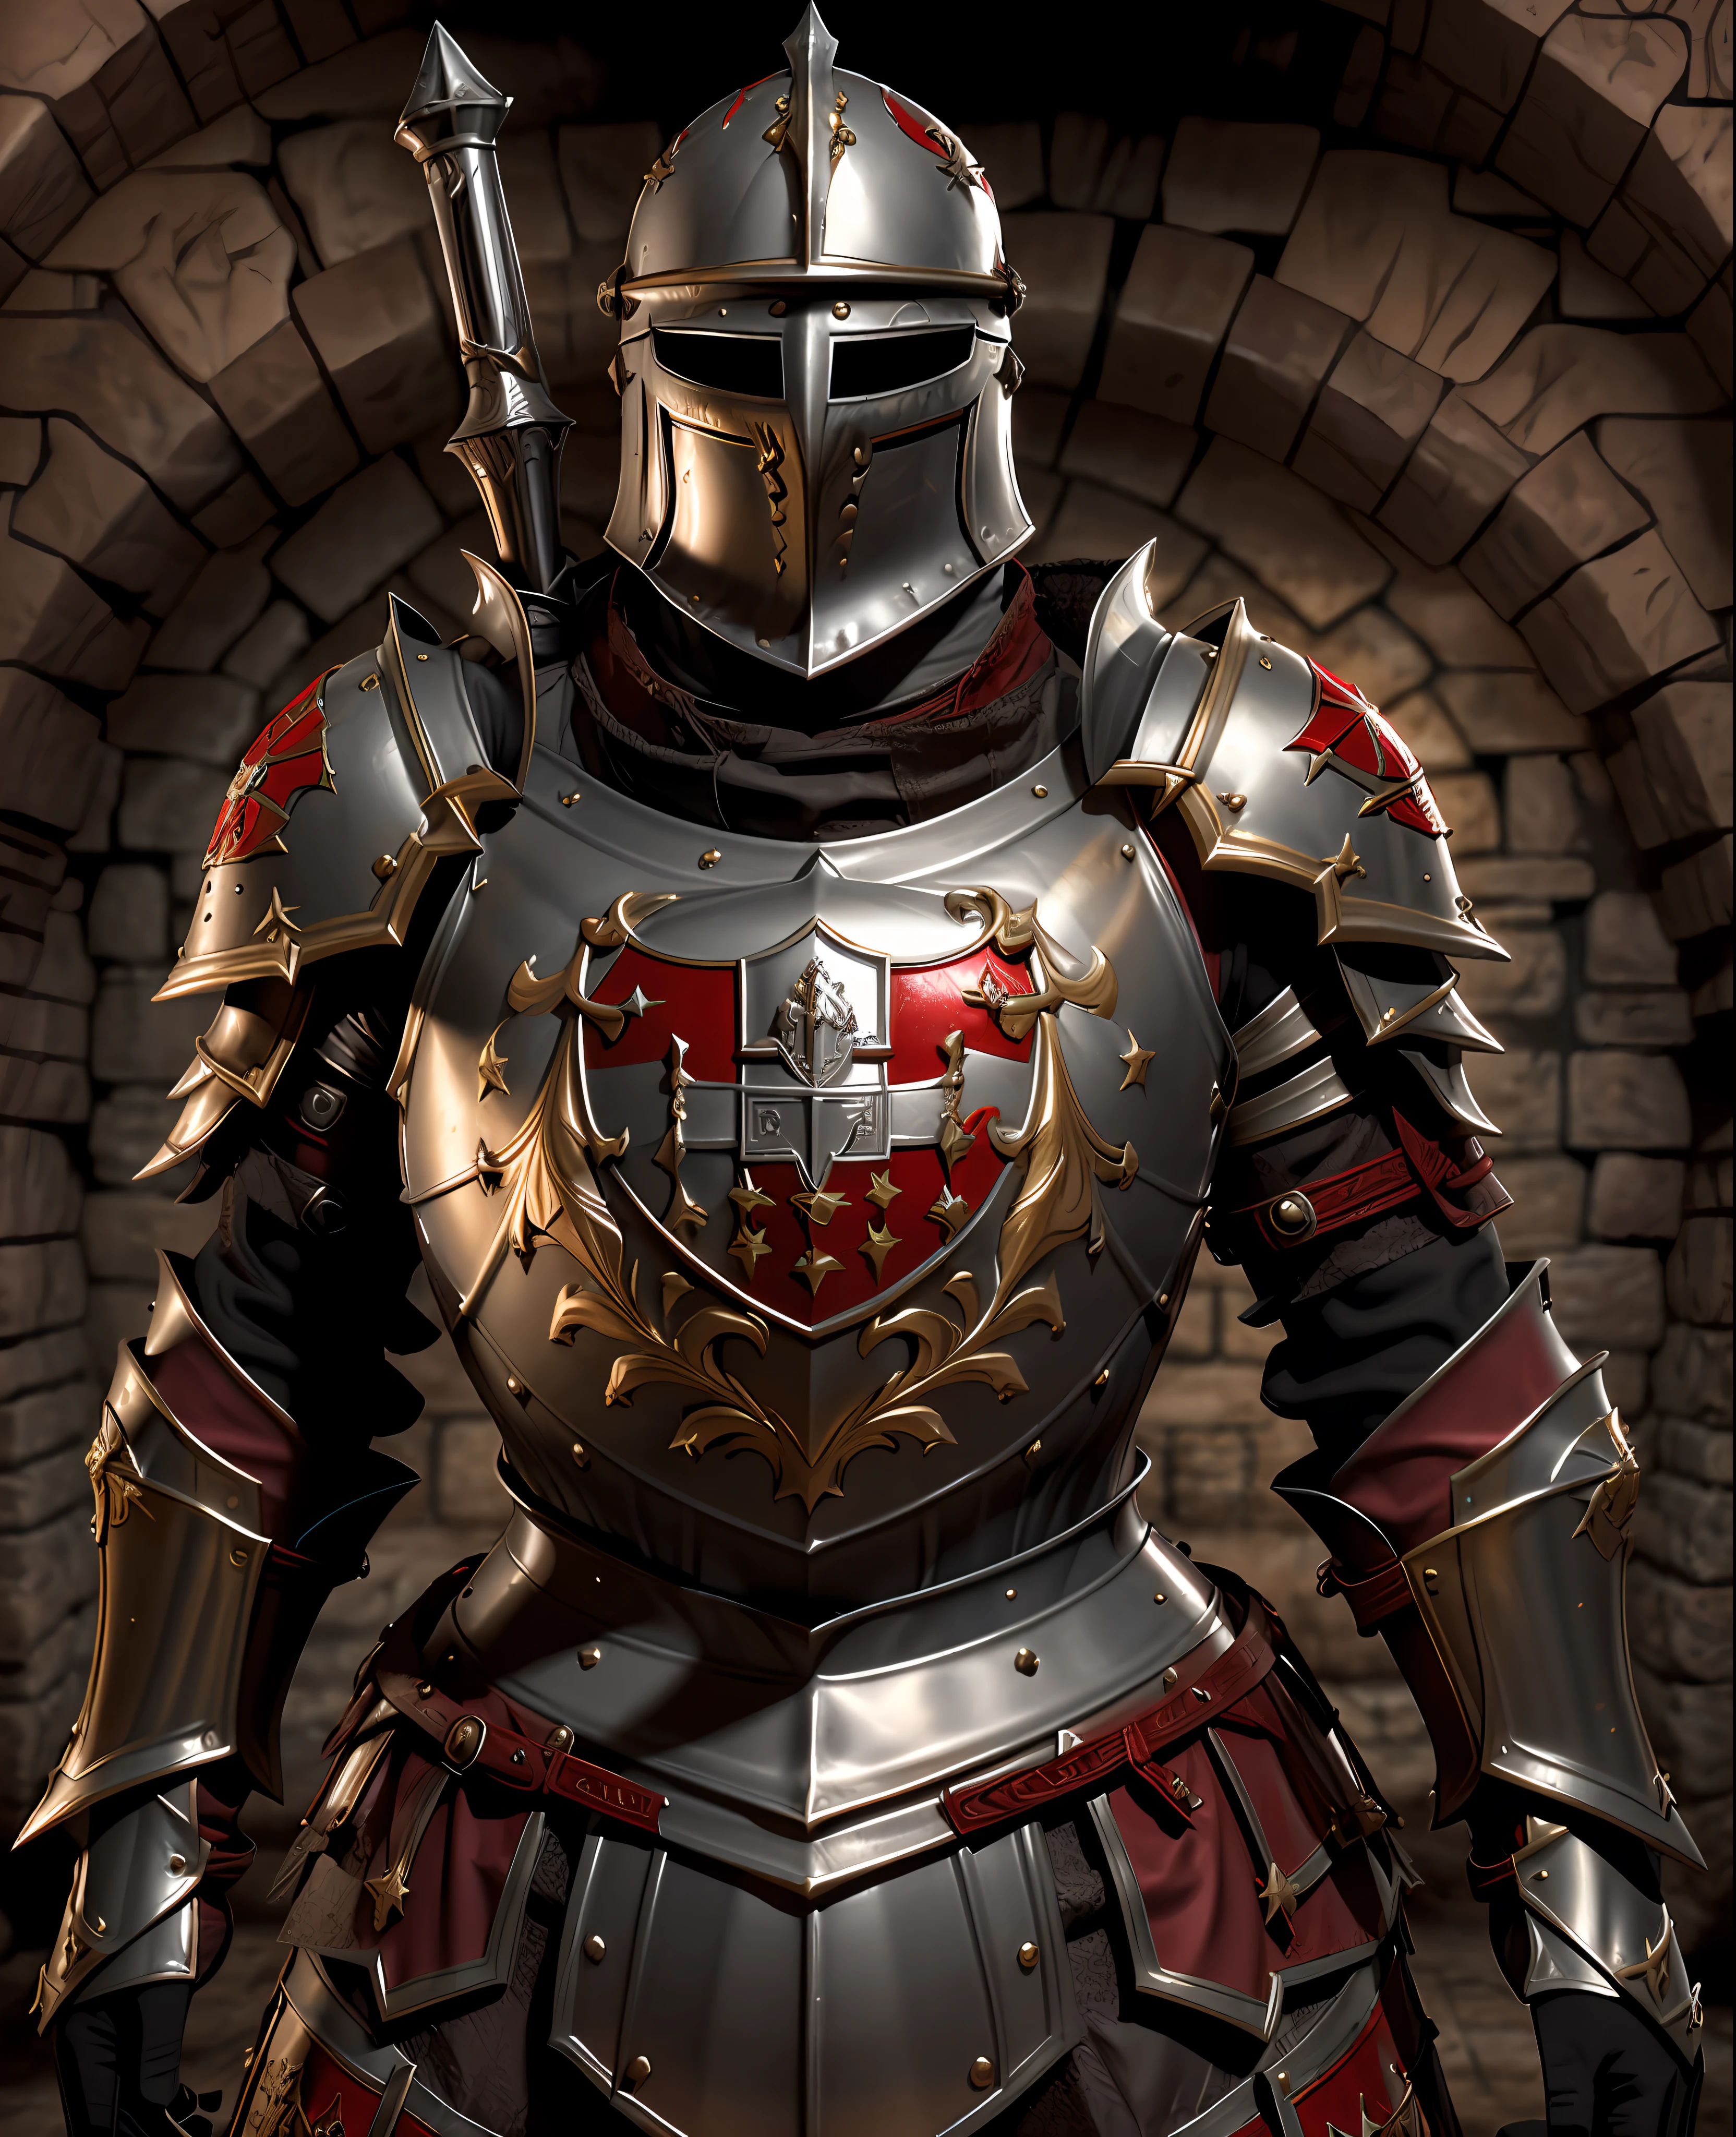 Tempelritter der Kreuzzüge, mit seiner silbernen Rüstung mit einem roten Kreuz auf der Rüstung, erste Arbeit, Bessere Qualität, Realist, den Betrachter anschauen, Kriegsszene aus einer mittelalterlichen Schlacht,